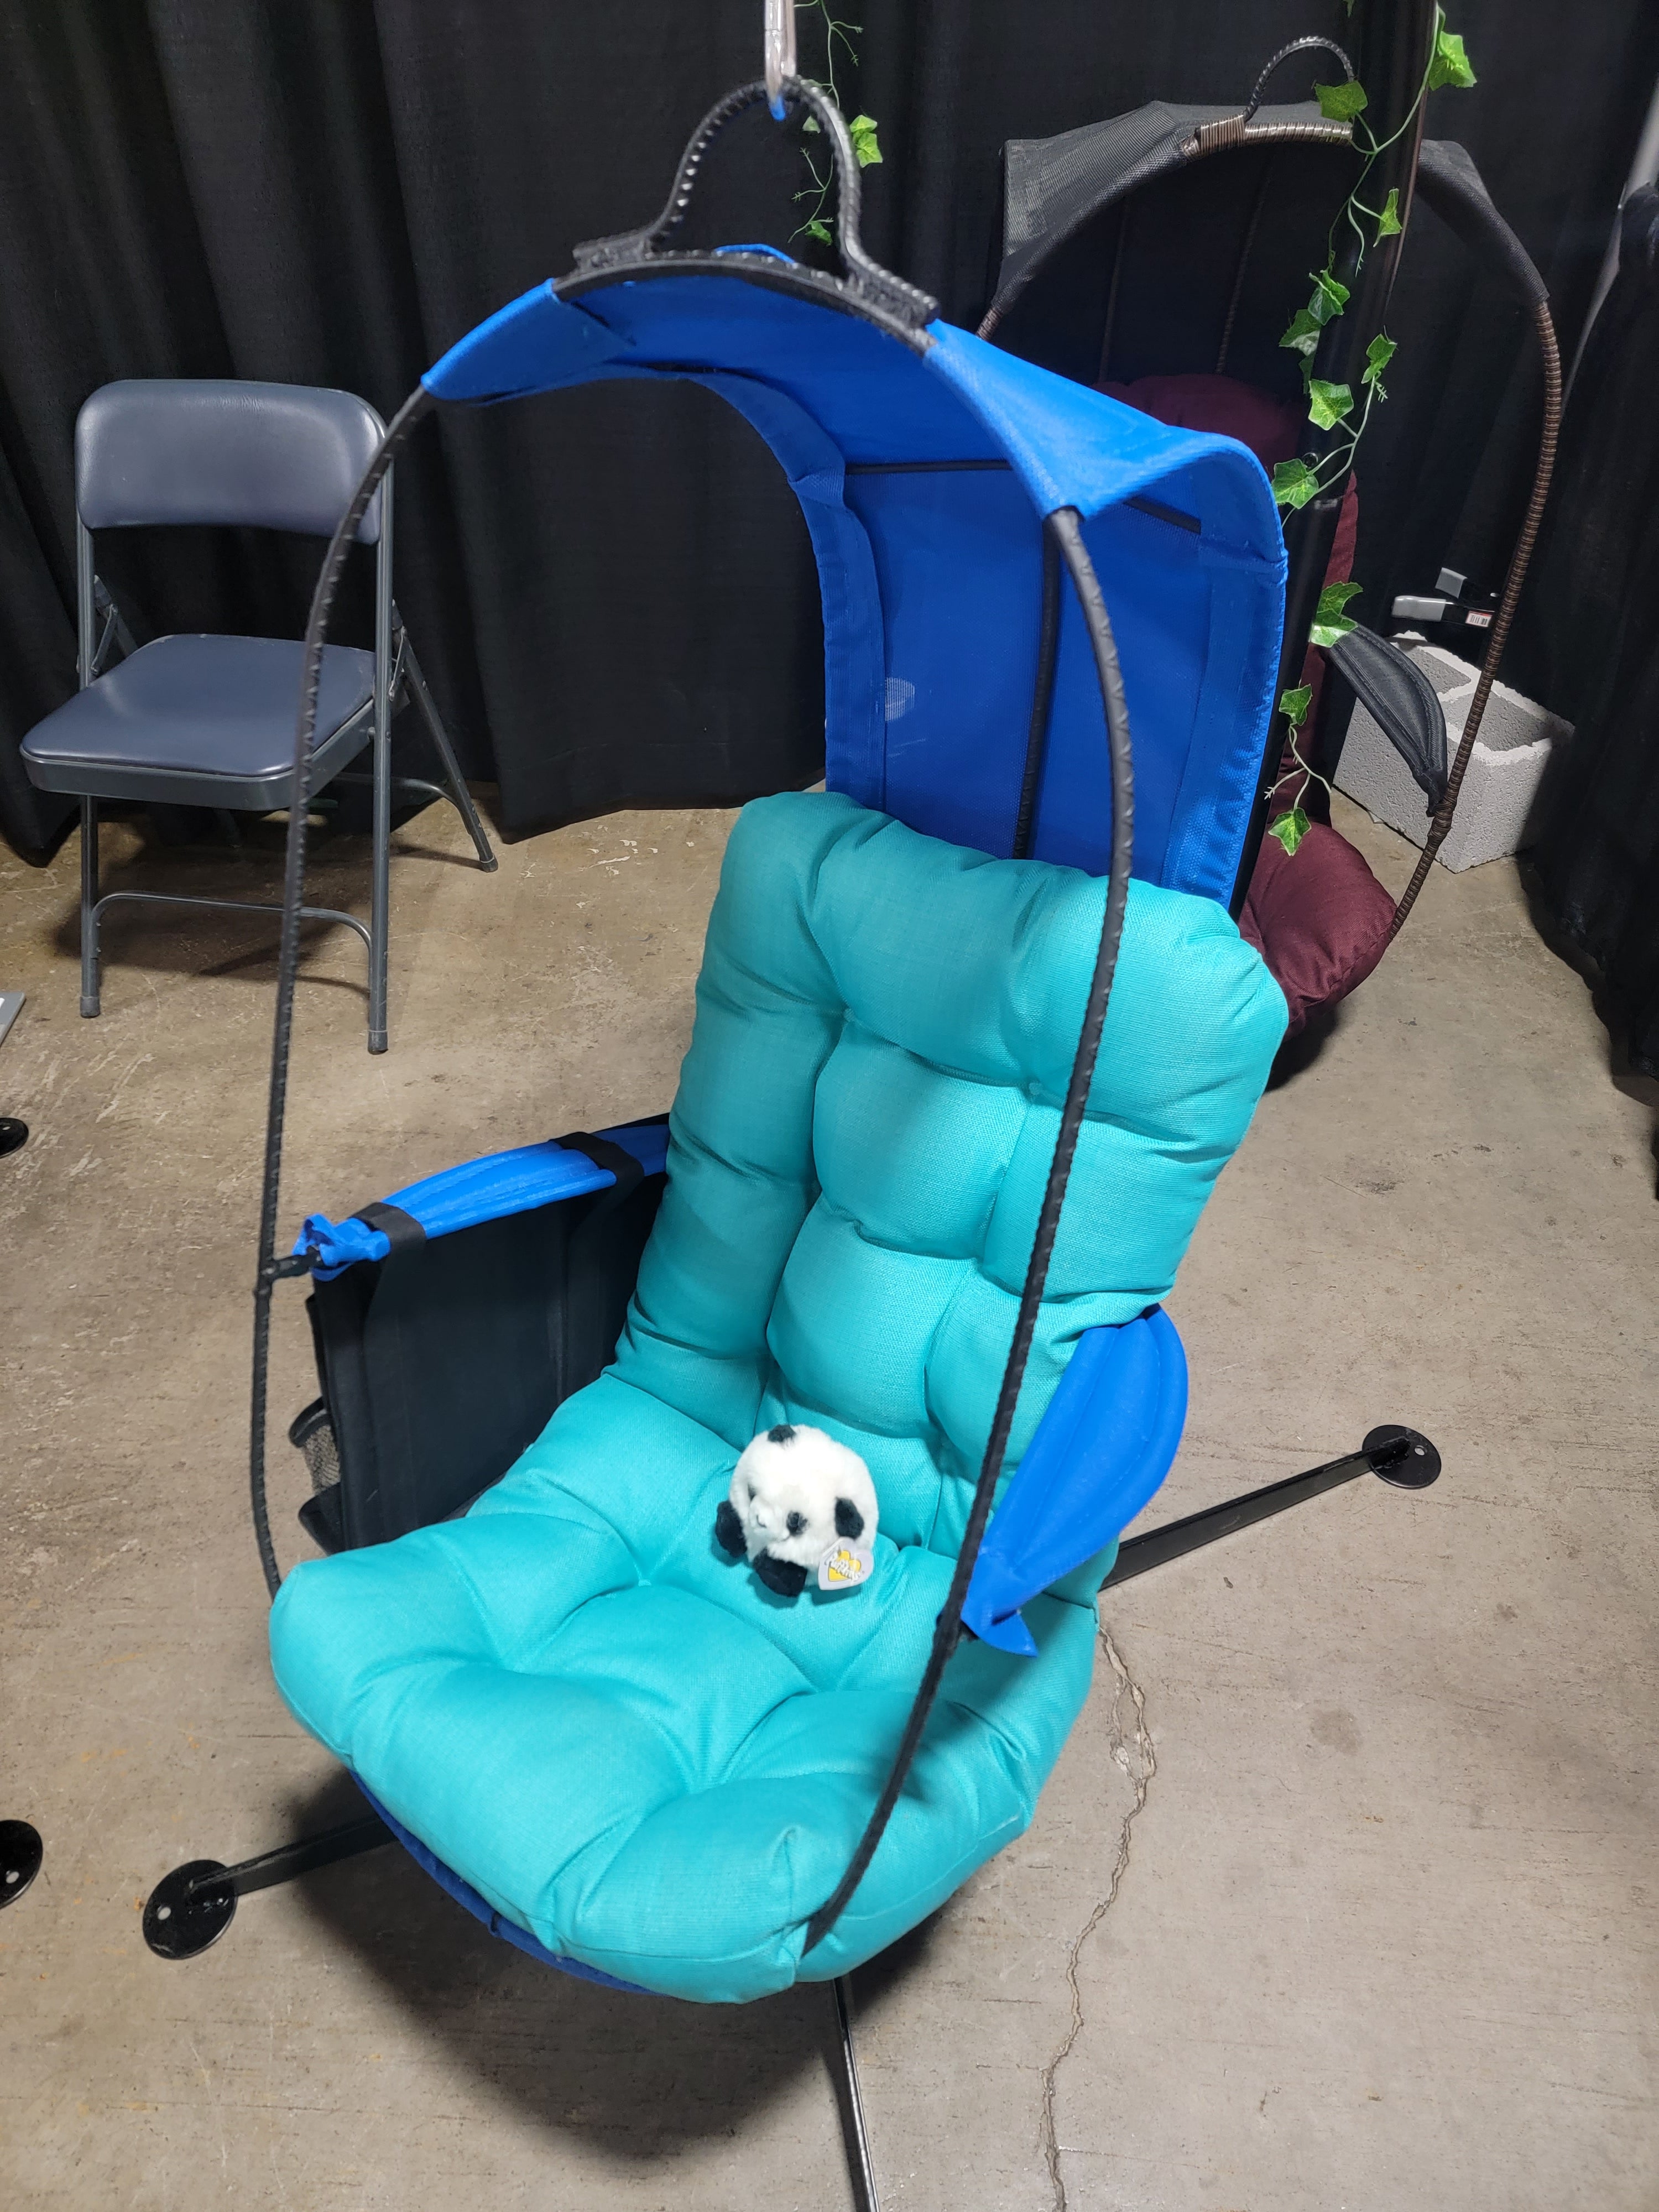 Cloud Chair Mini